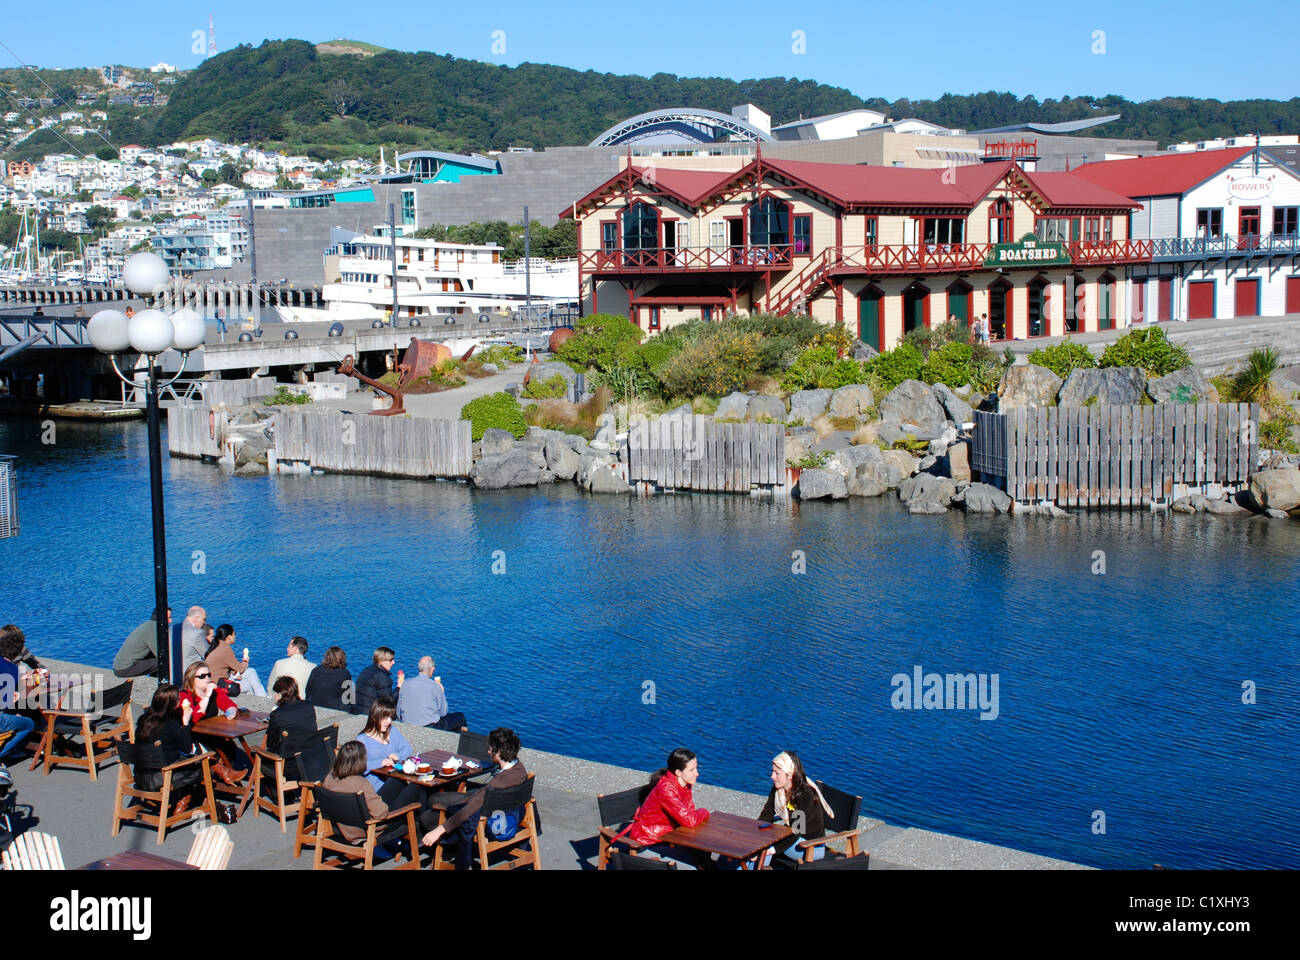 Wellingtons imbarcazione storica casa costruita nel 1894, situata sul Wellington's waterfront, con cafe. Foto Stock